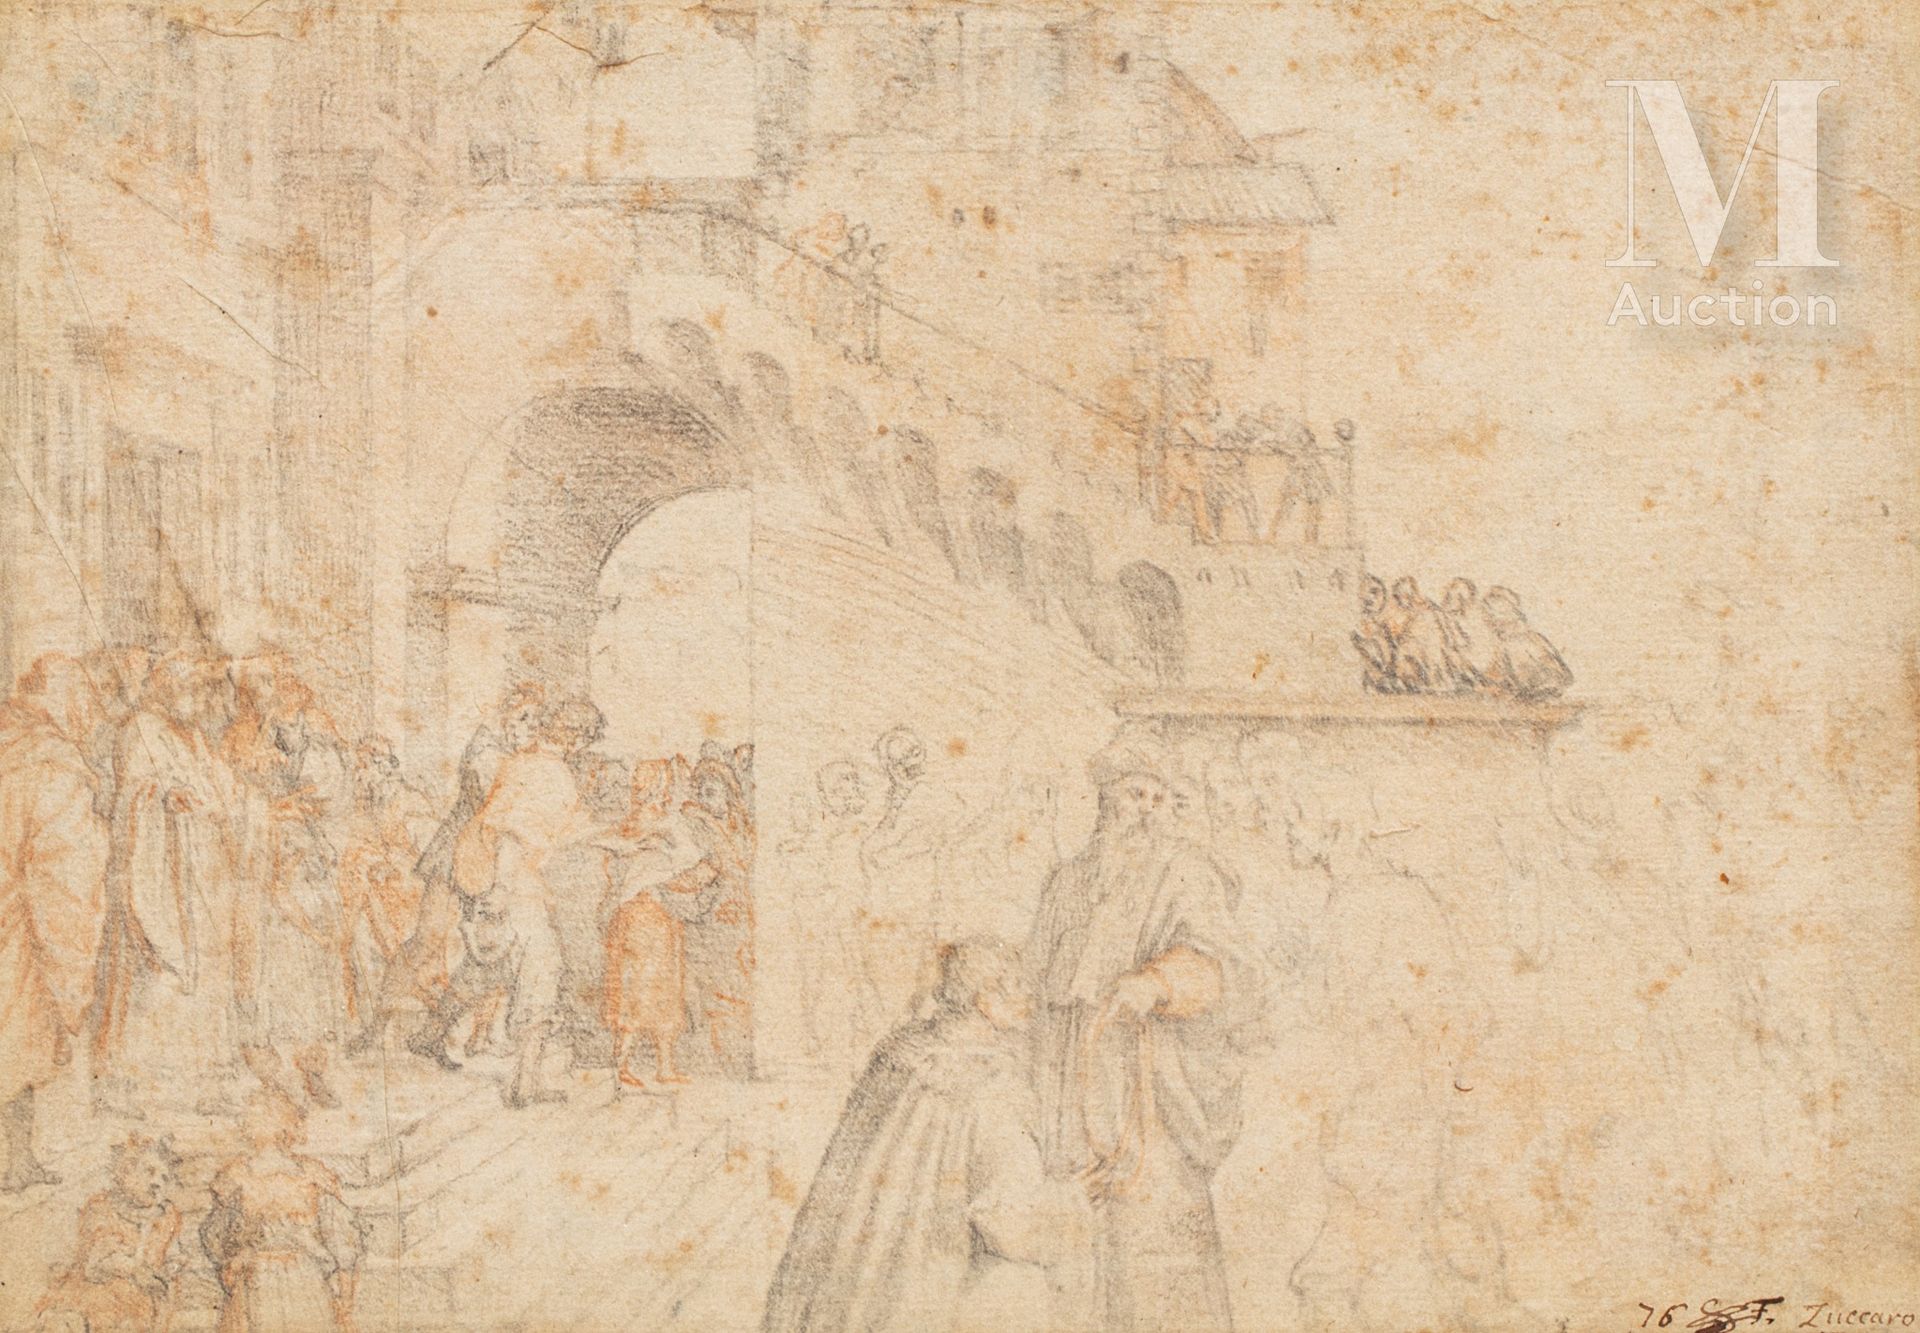 Frederico ZUCCARO (1542 - 1609) Charaktere in einem Palast

Holzkohlezeichnung

&hellip;